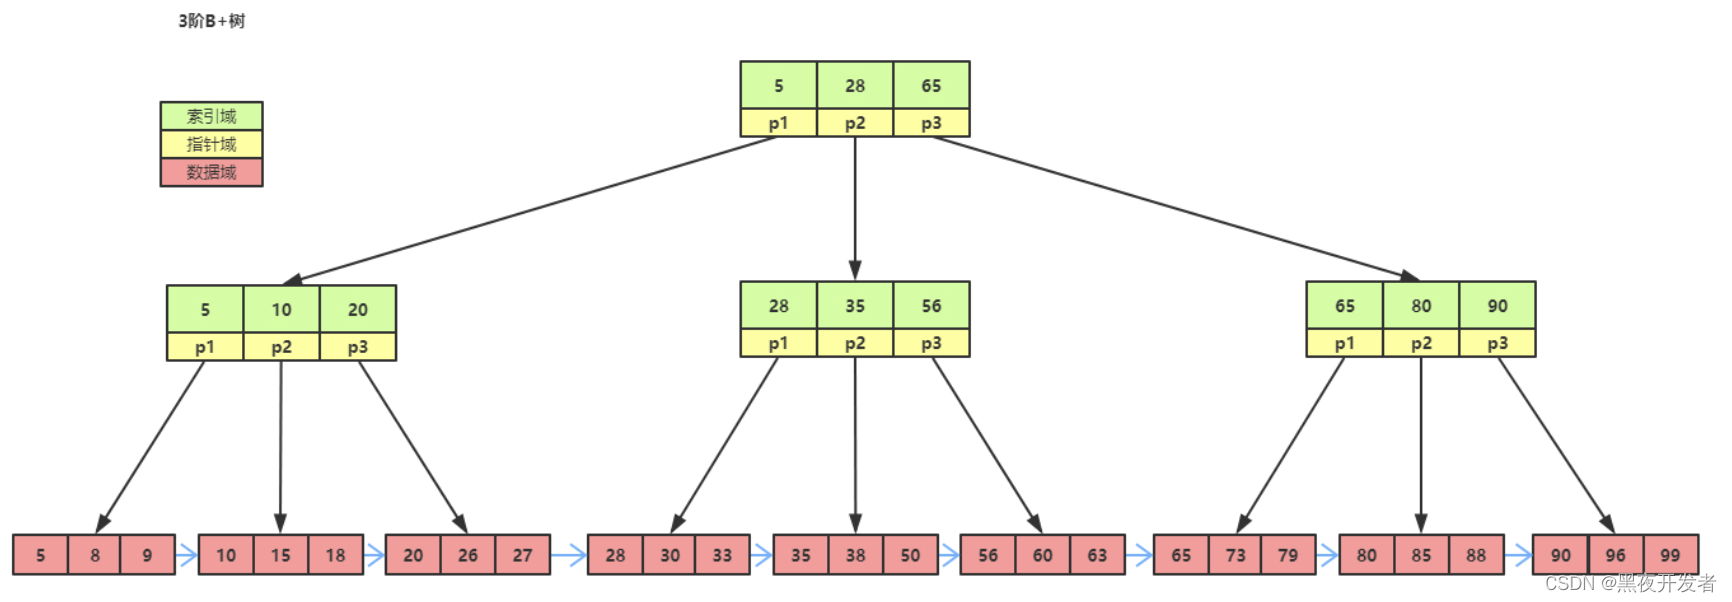 数据库为什么使用B+树而不是B树做索引